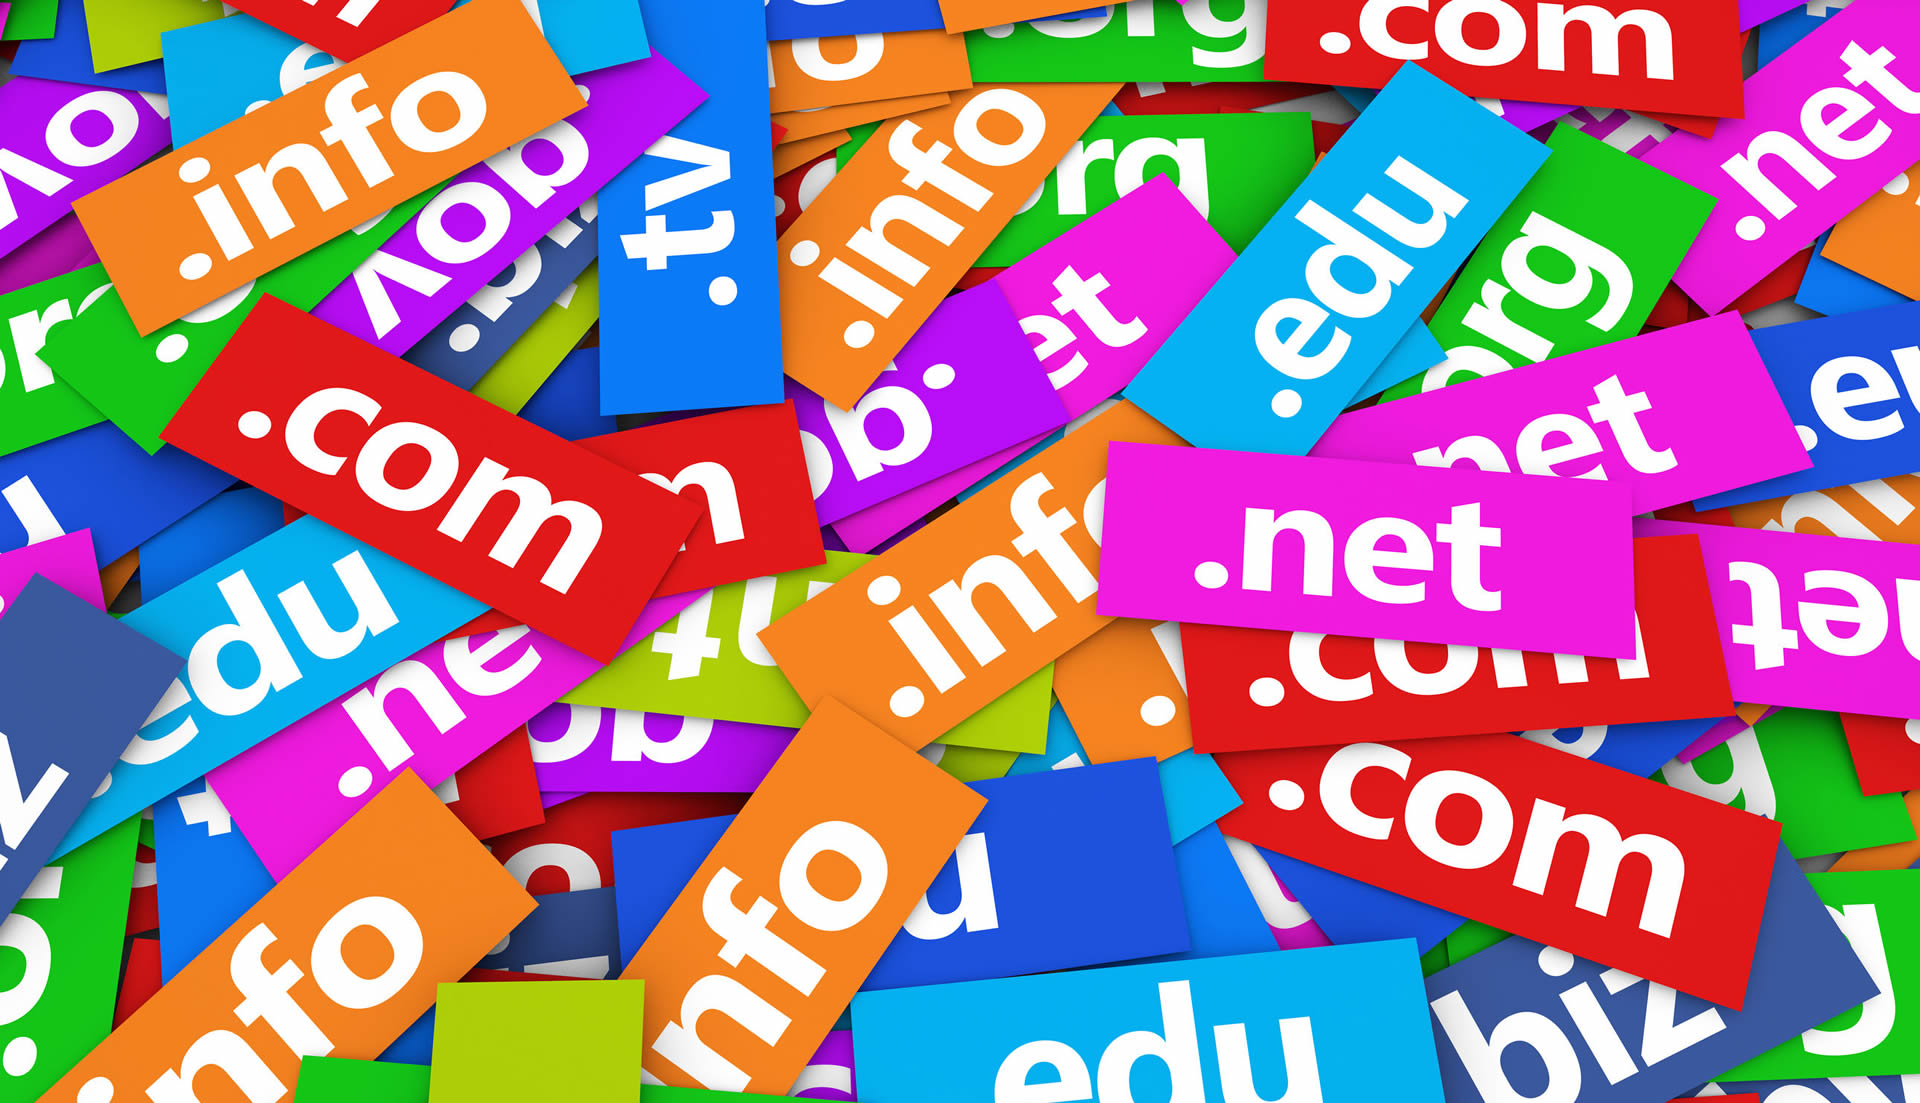 The Ultimate Guide to Domain Registrars & Hosting : Namecheap, NameSilo, Siteground, LiquidWeb, WPX Hosting, A2 Hosting, Bluehost.com, Hostinger.com